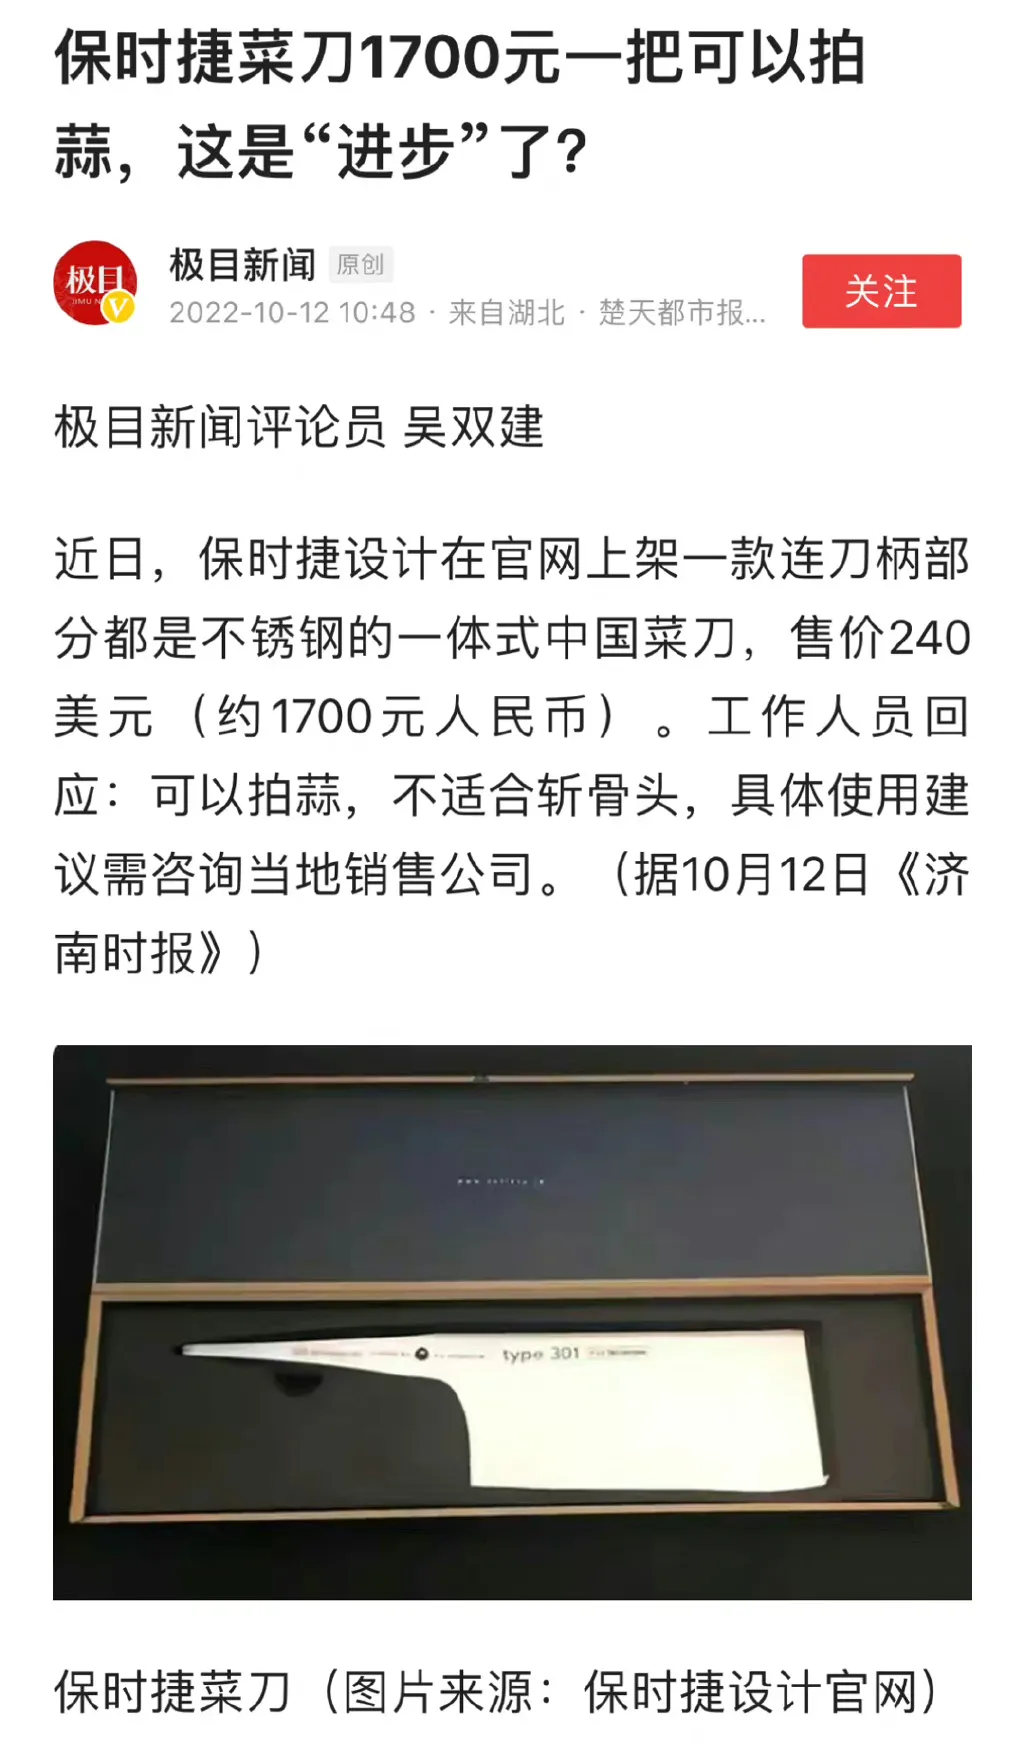 保时捷卖中国标准菜刀售价1700元 保时捷设计上架一款能拍蒜的菜刀 卖1700元已被抢光